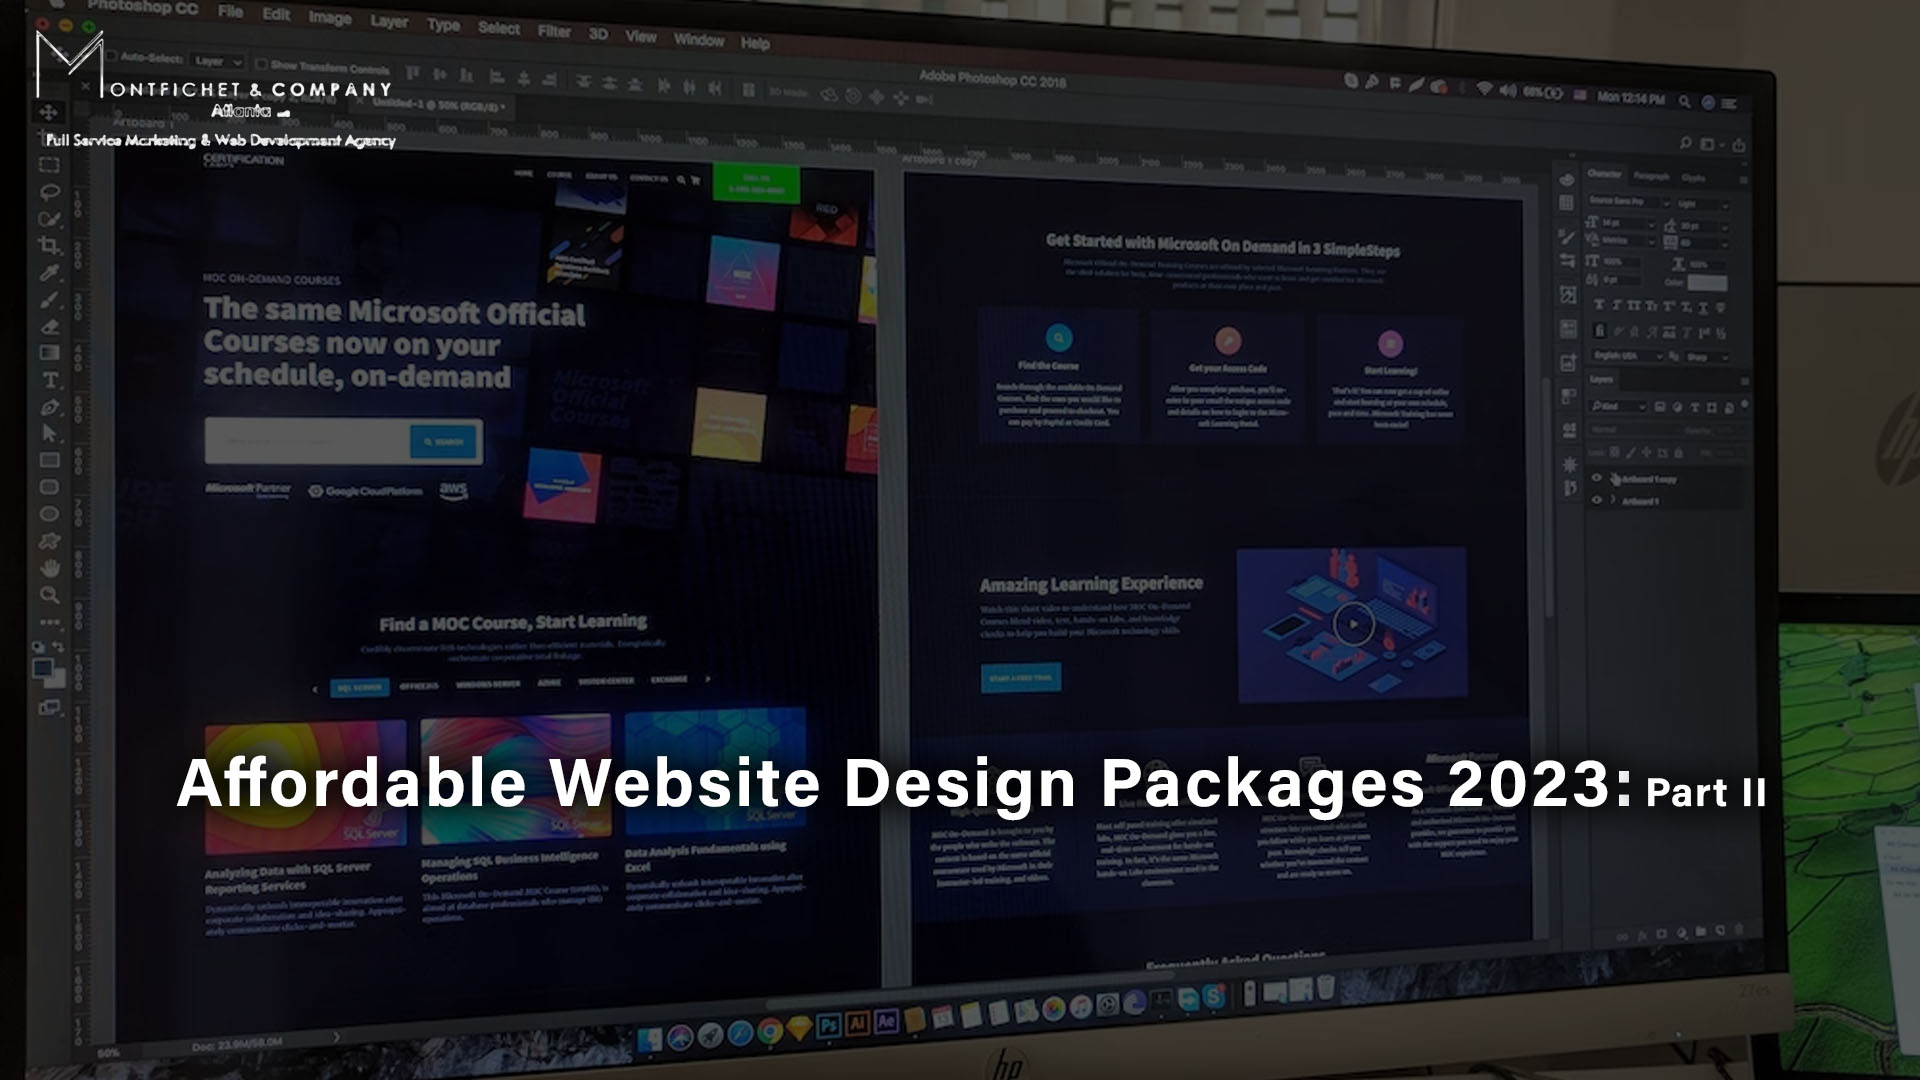 Affordable Website Design Packages 2023: Part II